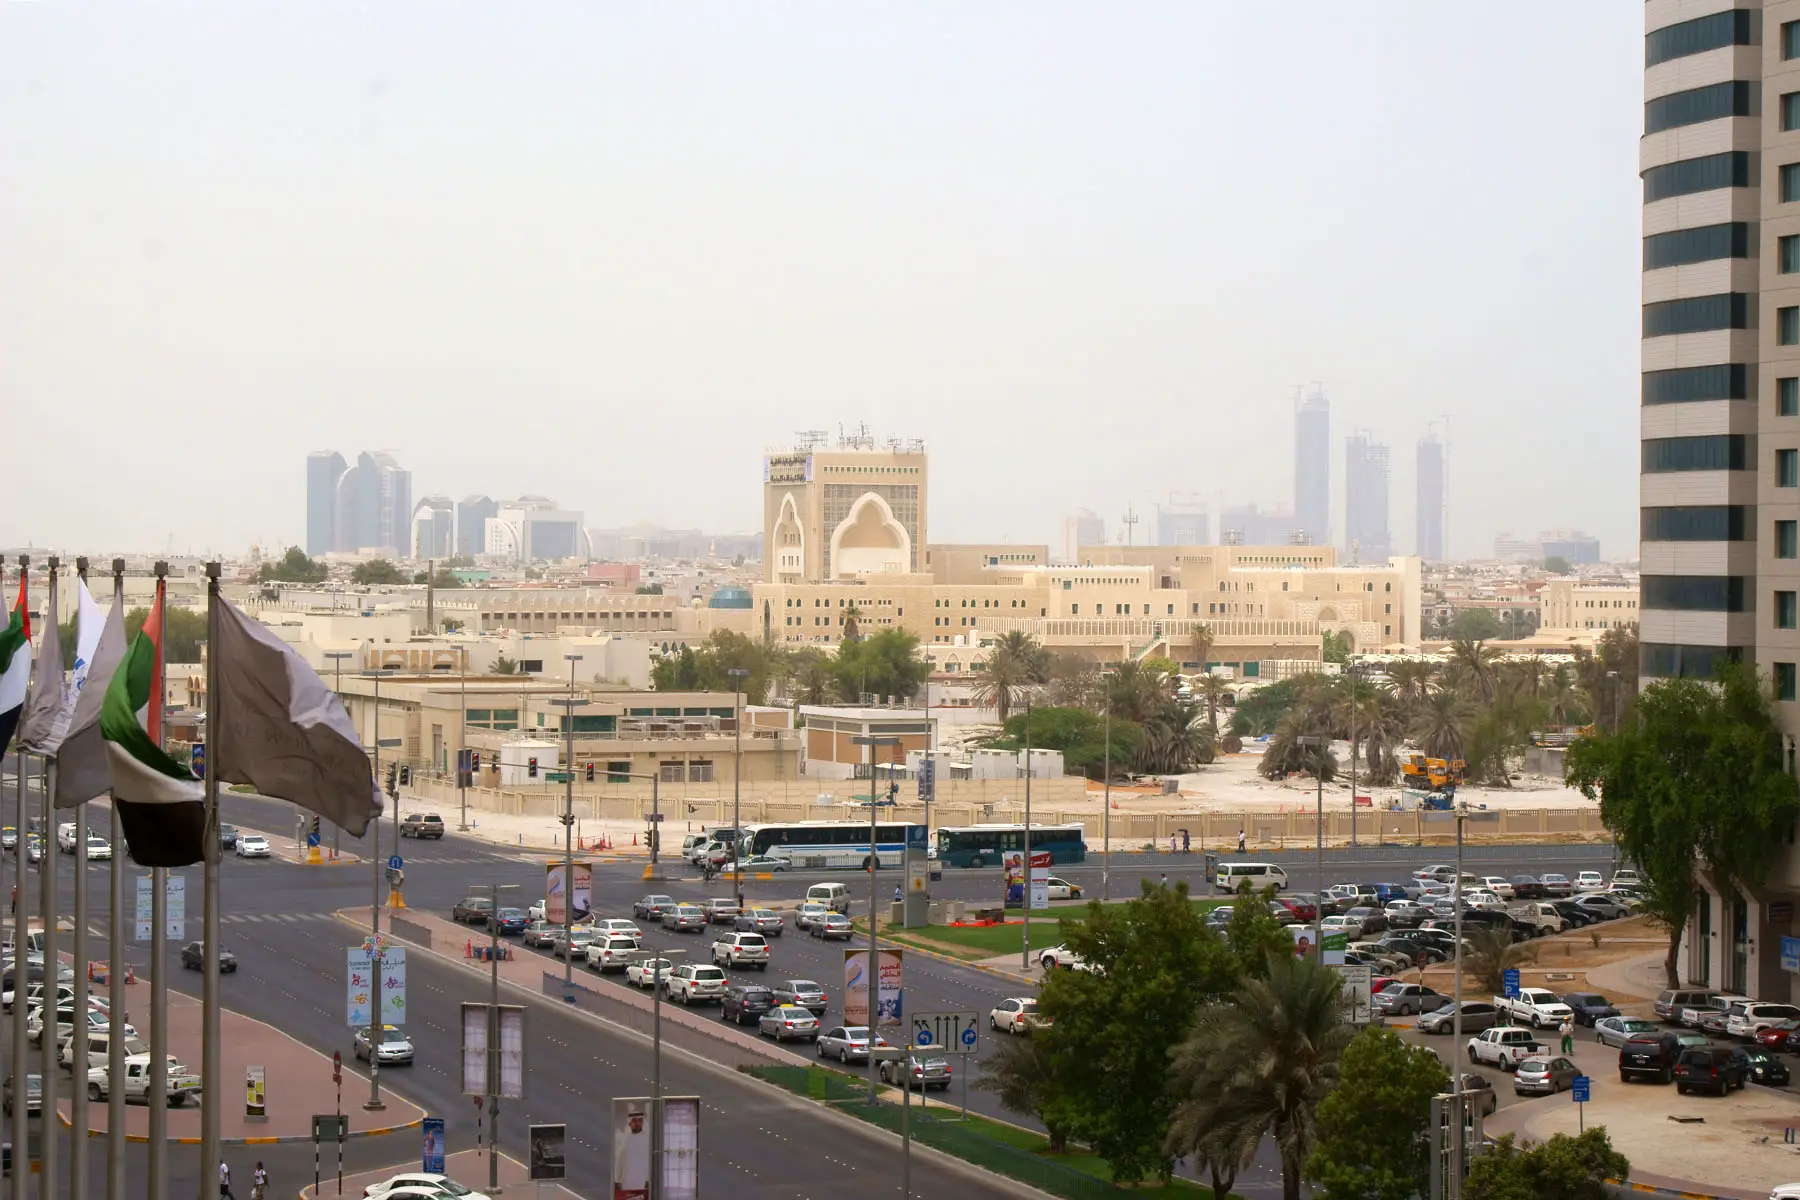 Busy intersection near Shaikh Khalifa Medical City in Abu Dhabi, UAE.